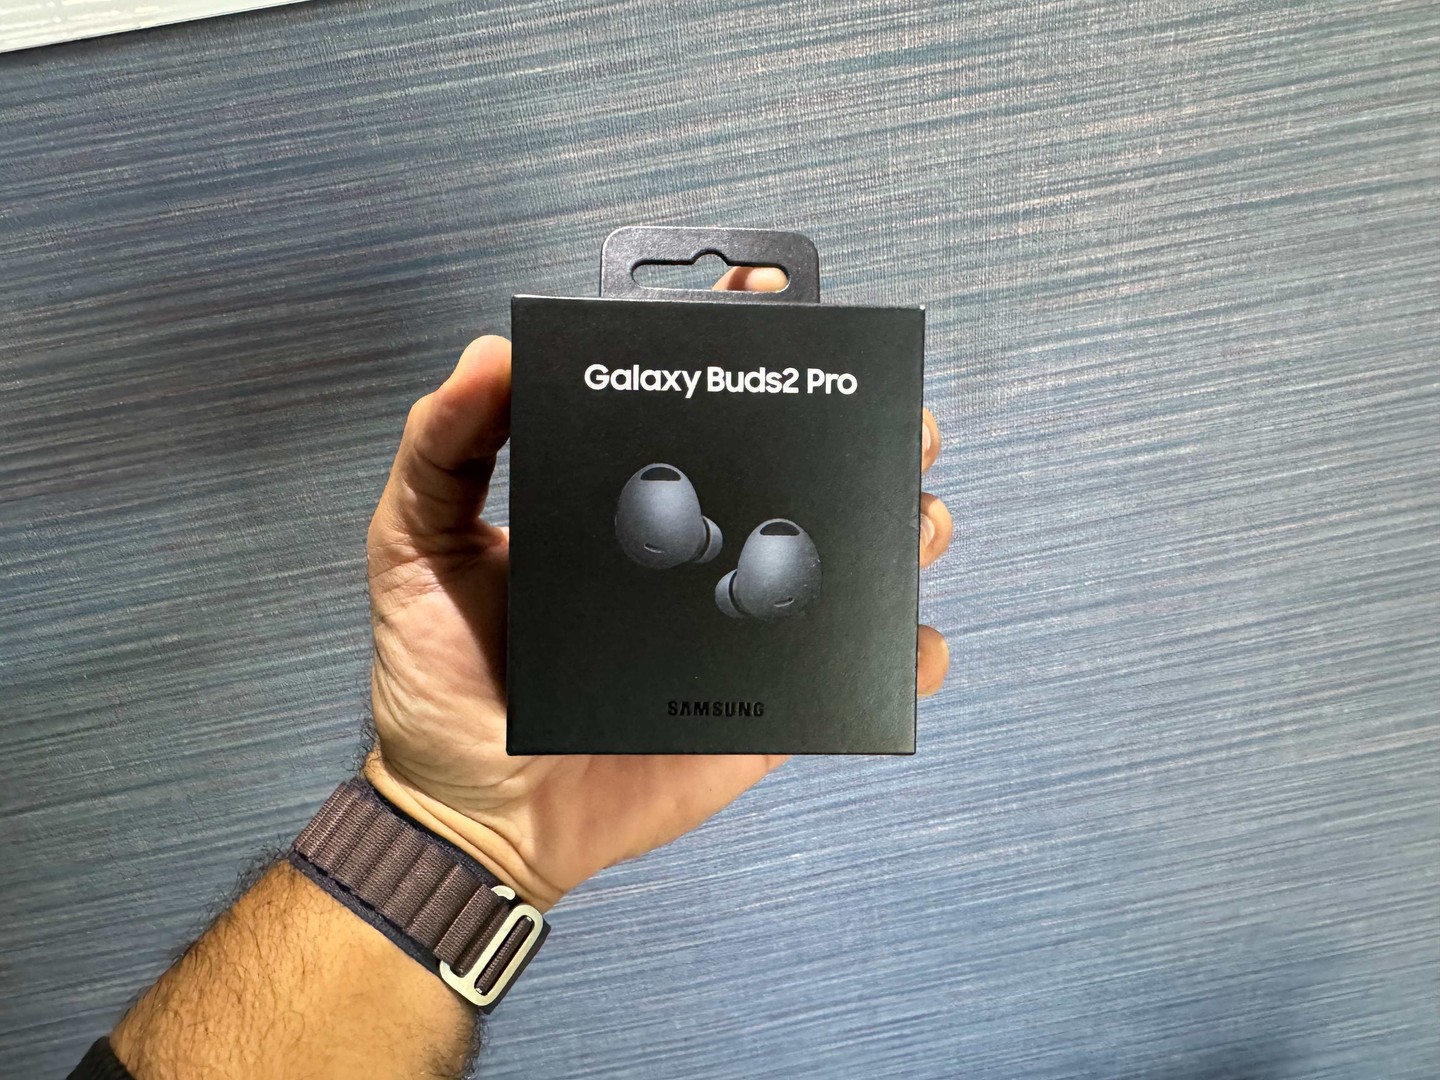 accesorios para electronica - Audífonos inalámbricos Galaxy Buds2 Pro Negros Nuevos | Originales, $ 9,500 NEG